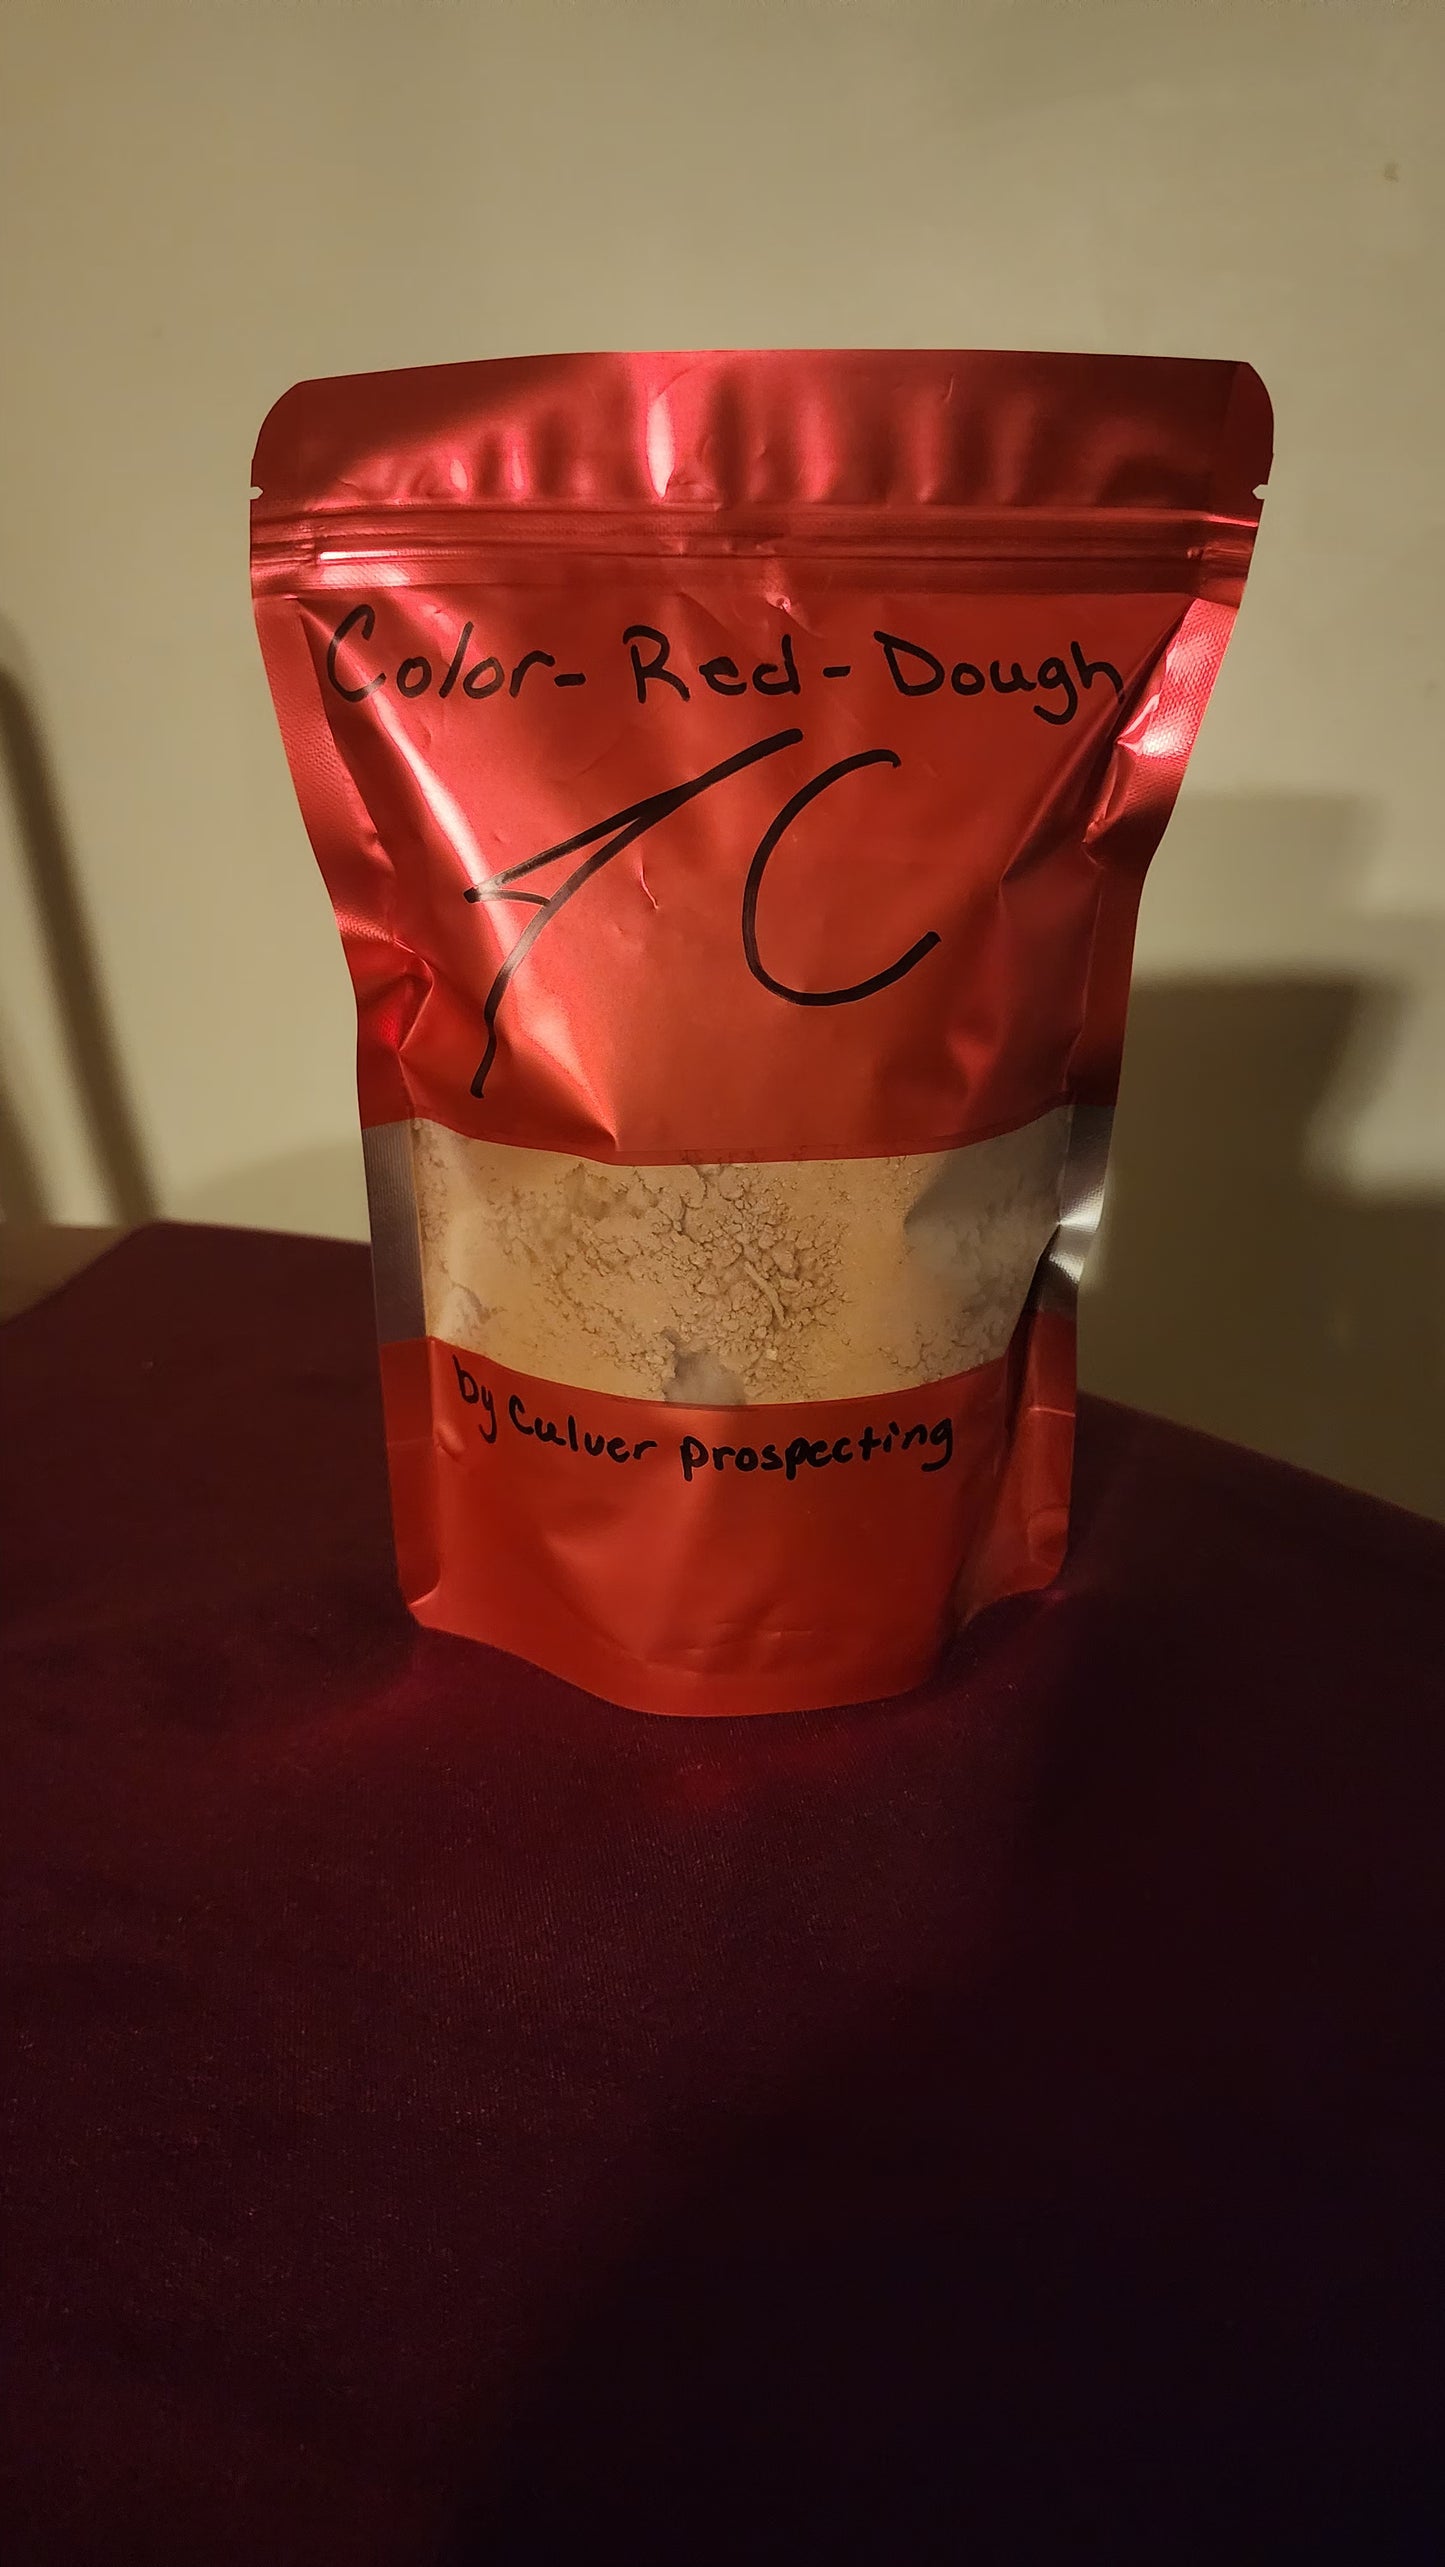 Color-red-dough 1/2 gram